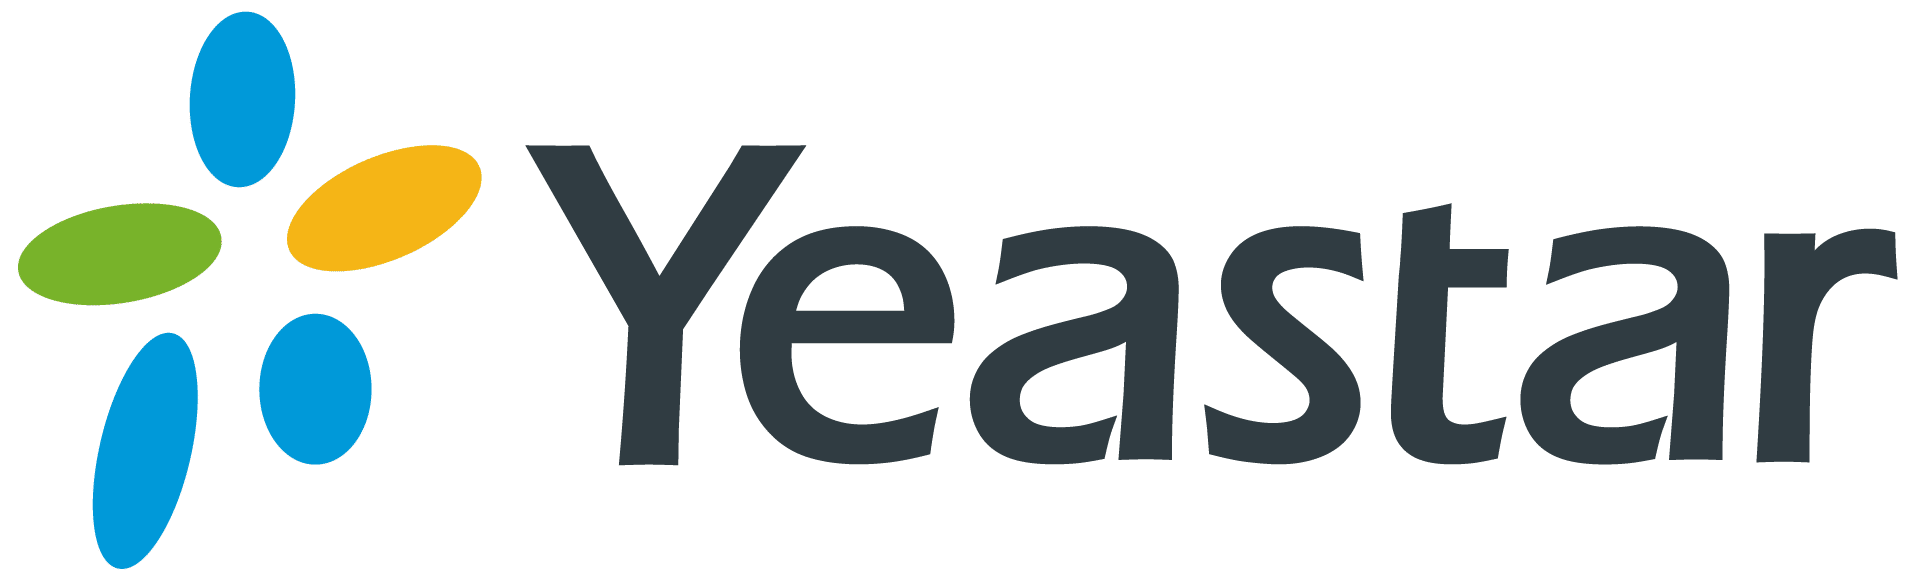 Yeastar-ippbx-pbx-logo